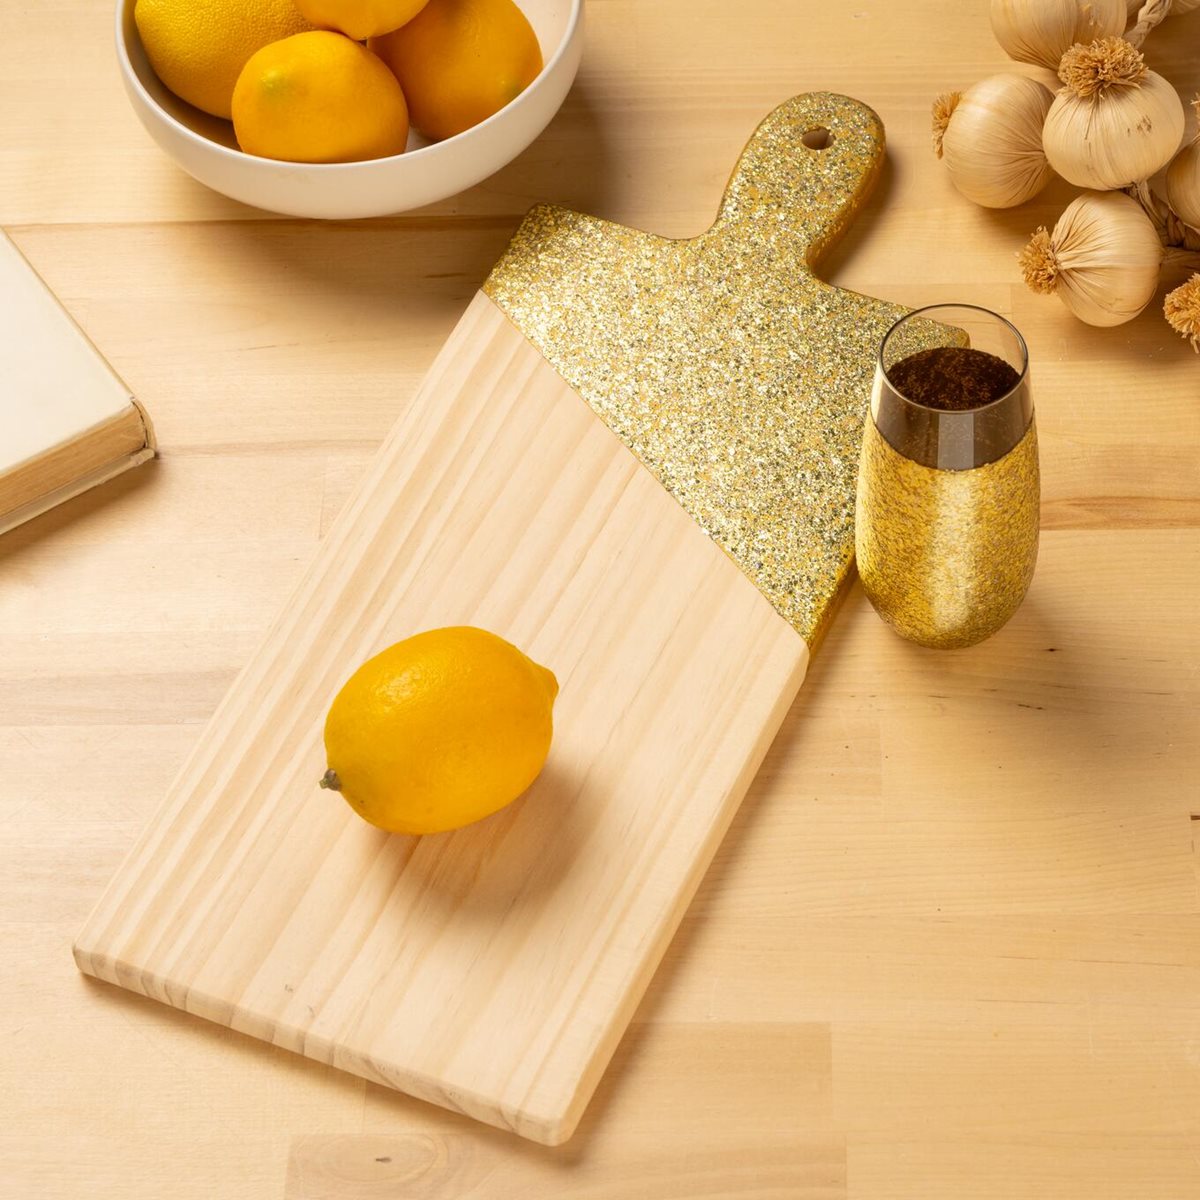 Decorative Gold Glass & Cutting Board